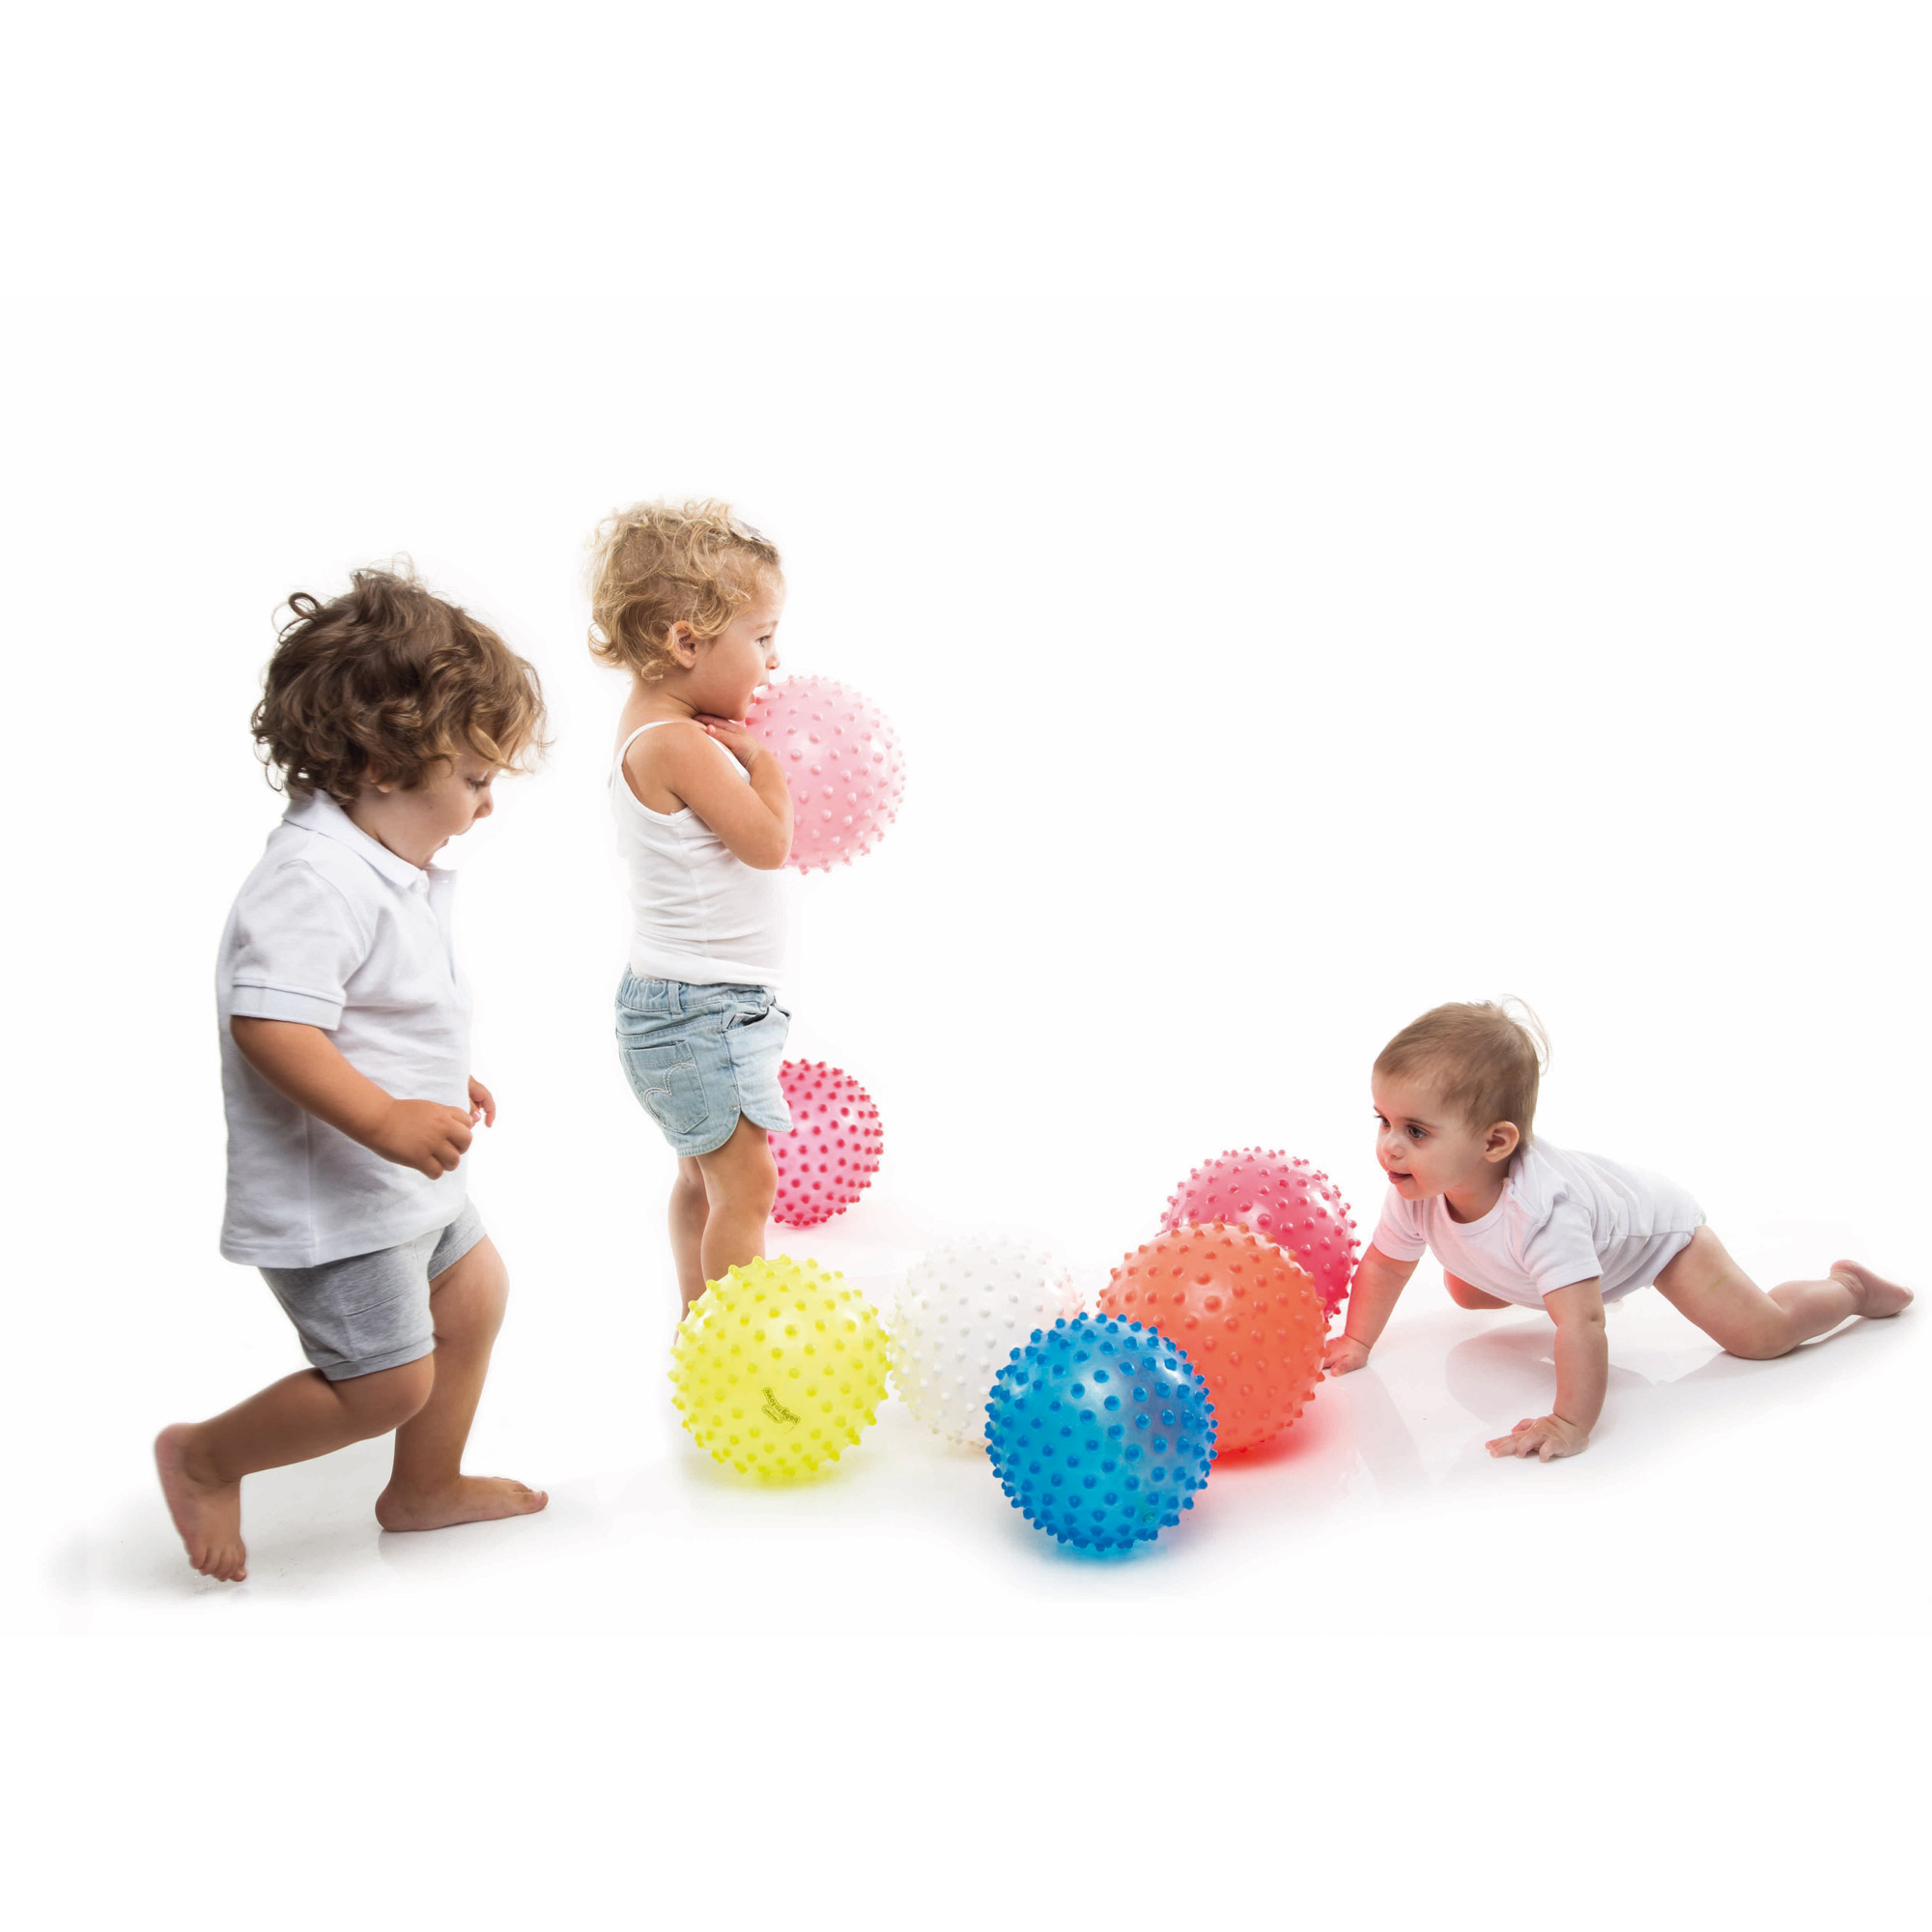 Balle Sensorielle De Babytolove Balles Ballons Aubert